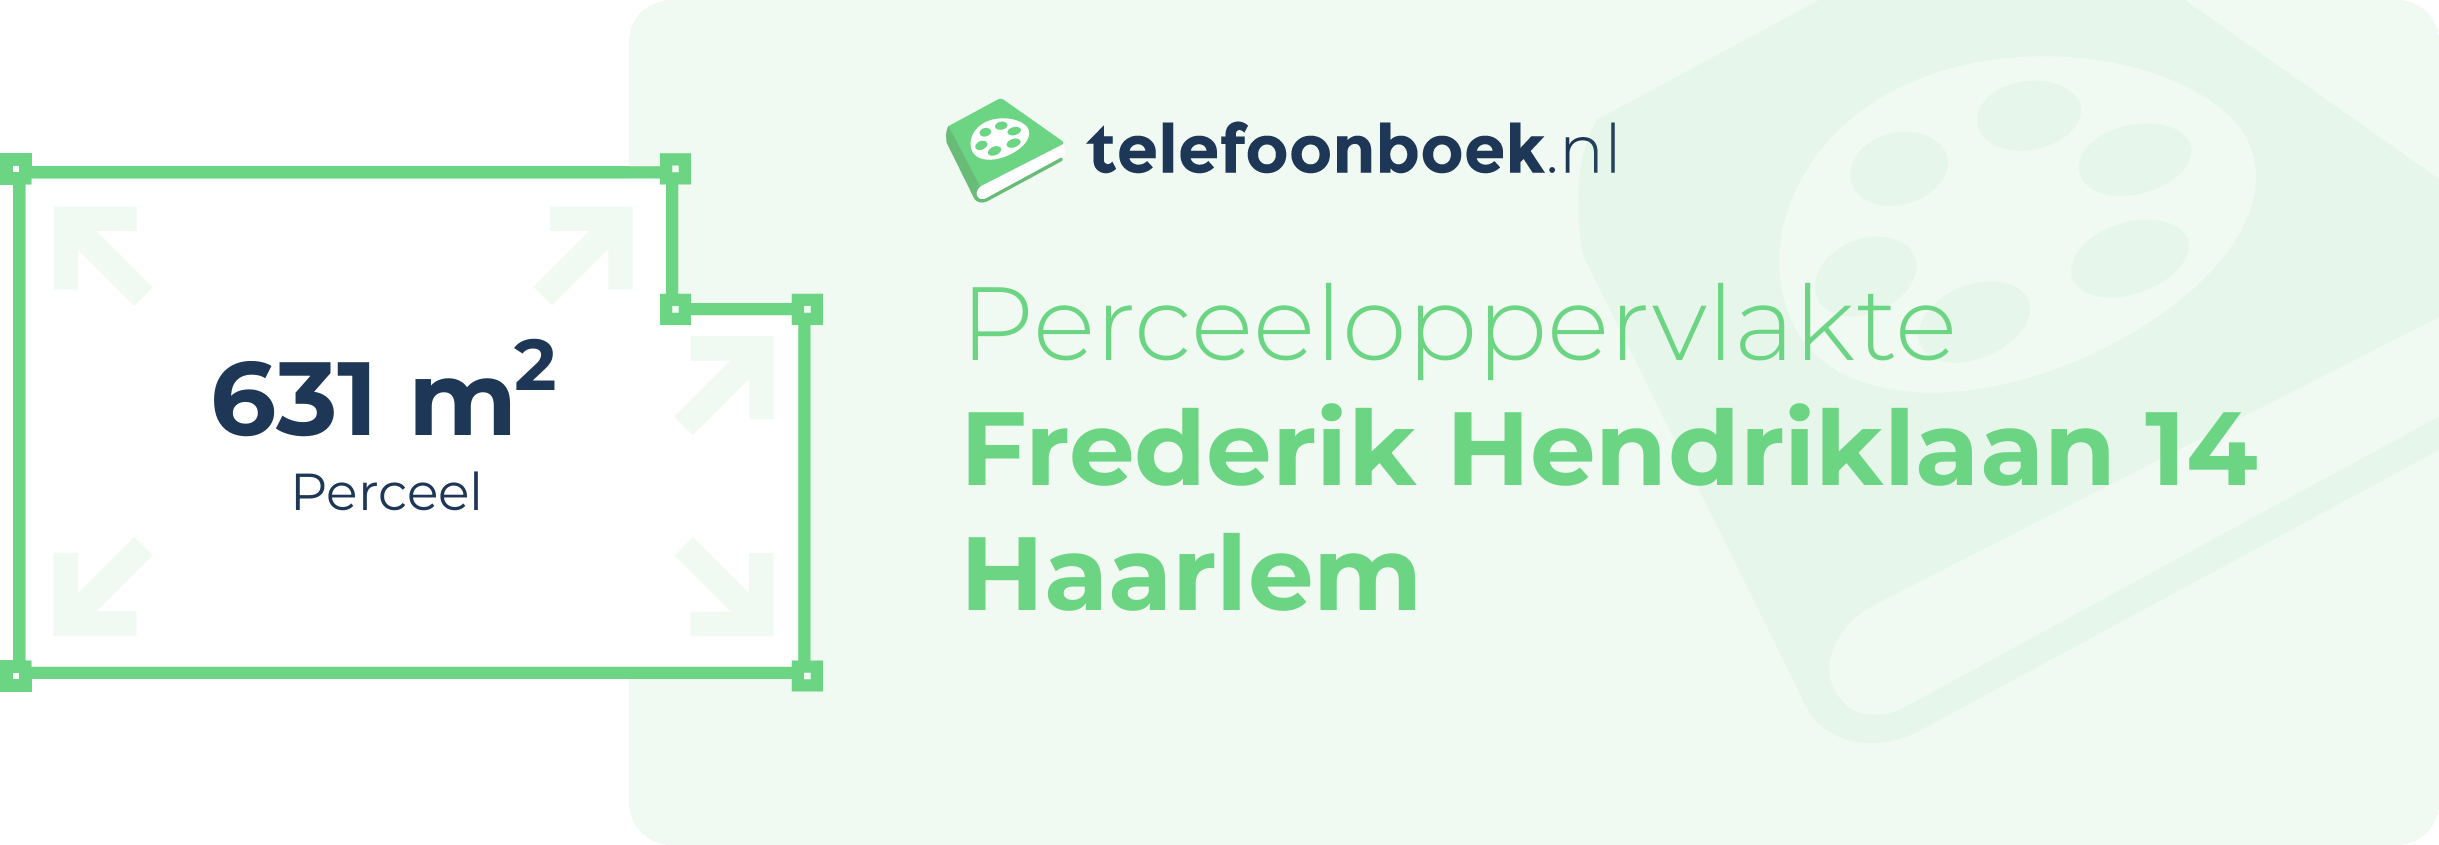 Perceeloppervlakte Frederik Hendriklaan 14 Haarlem